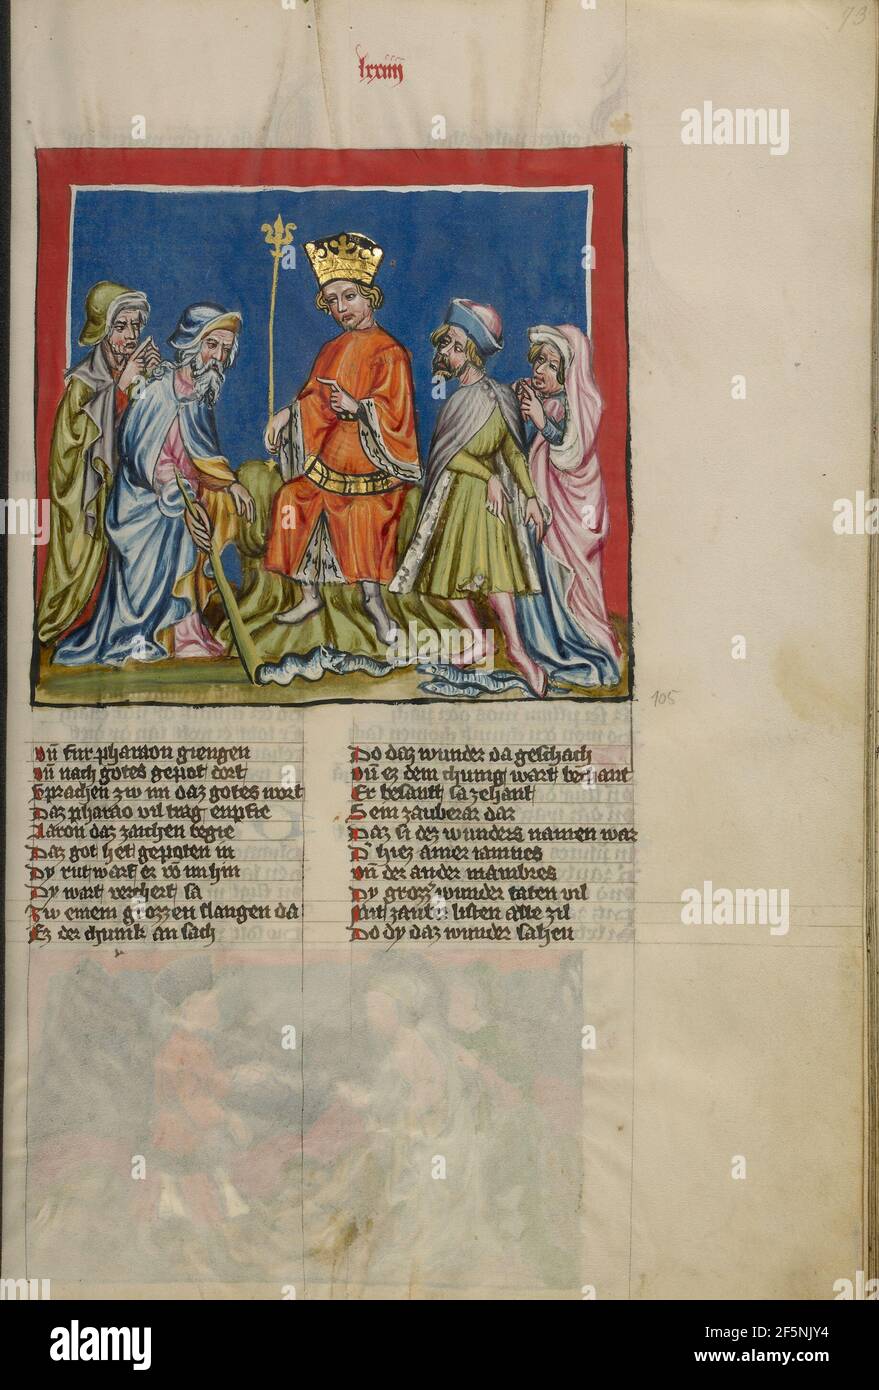 Aaron trasforma l'asta in un serpente. Aaron trasforma il bastone in un serpente; Unknown, Rudolf von EMS (austriaco, circa 1200 - 1254); circa 1400 - 1410; Tempera colori, oro, vernice argentata, e inchiostro su pergamena; foglia: 33.5 × 23.5 cm (13 3/16 × 9 1/4 in.); MS. 33 (88.MP.70), fol. 73; Foto Stock